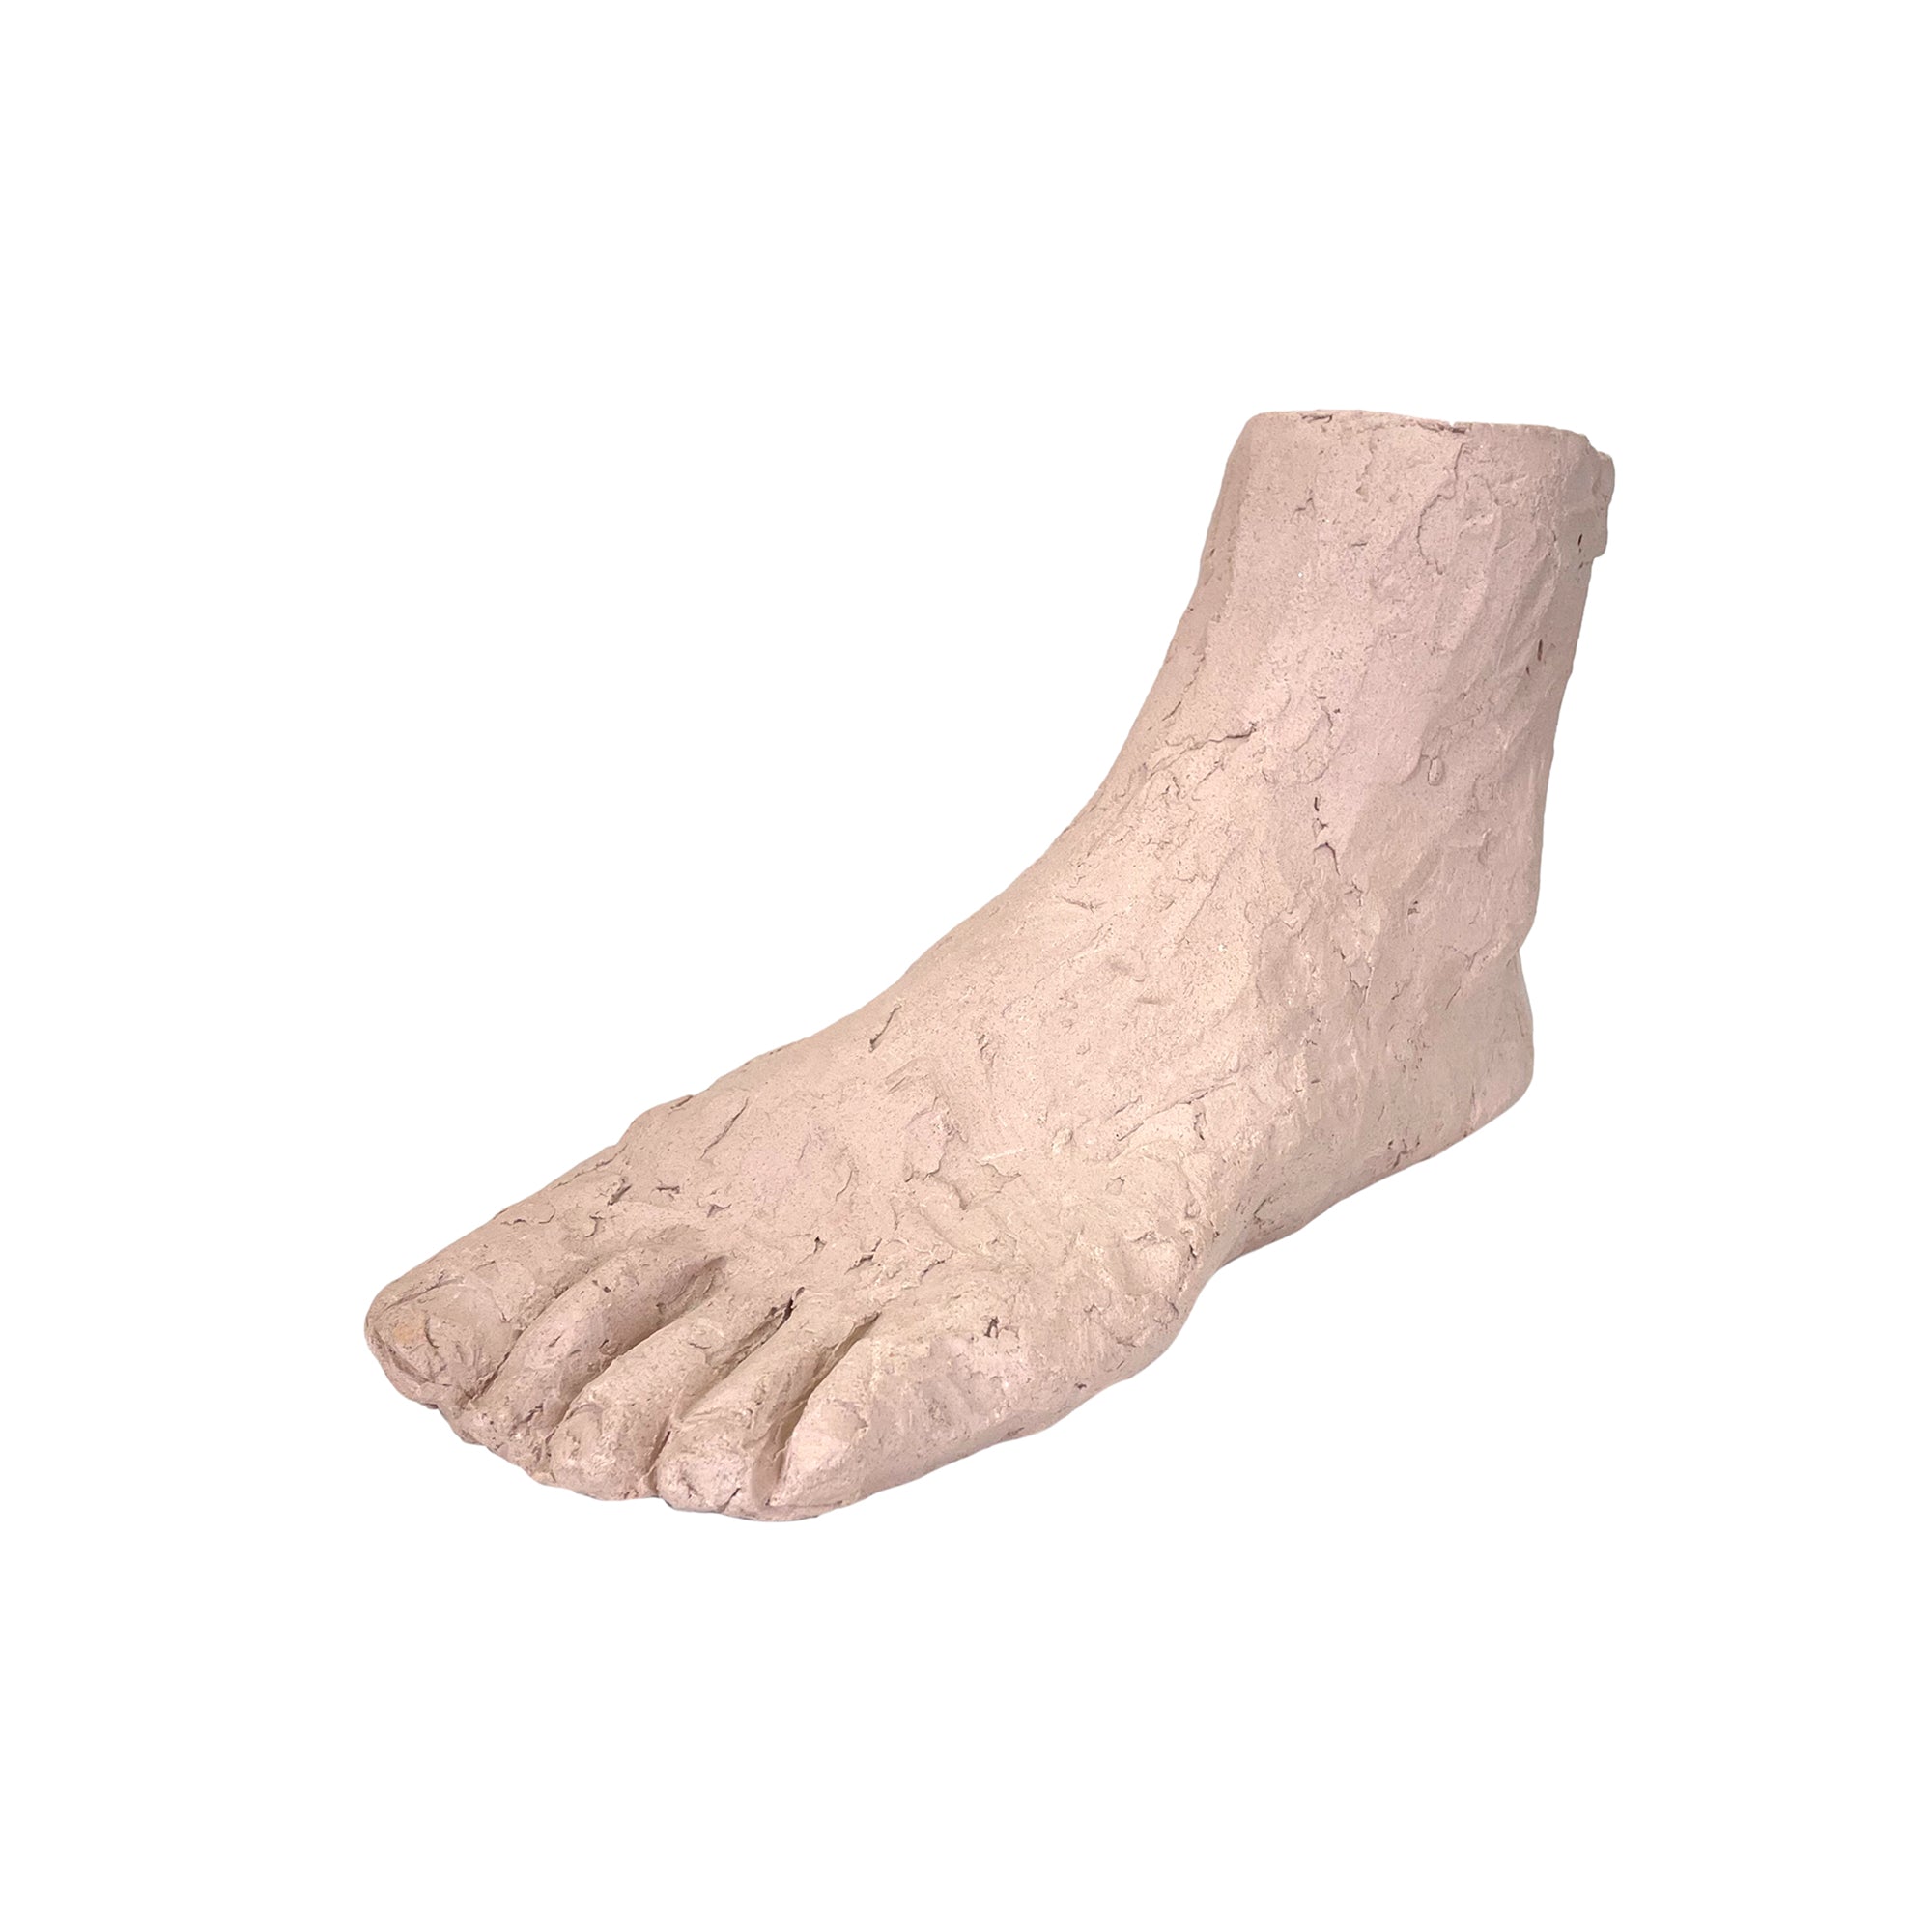 Ceramic Foot Sculpture by Barbara Alper